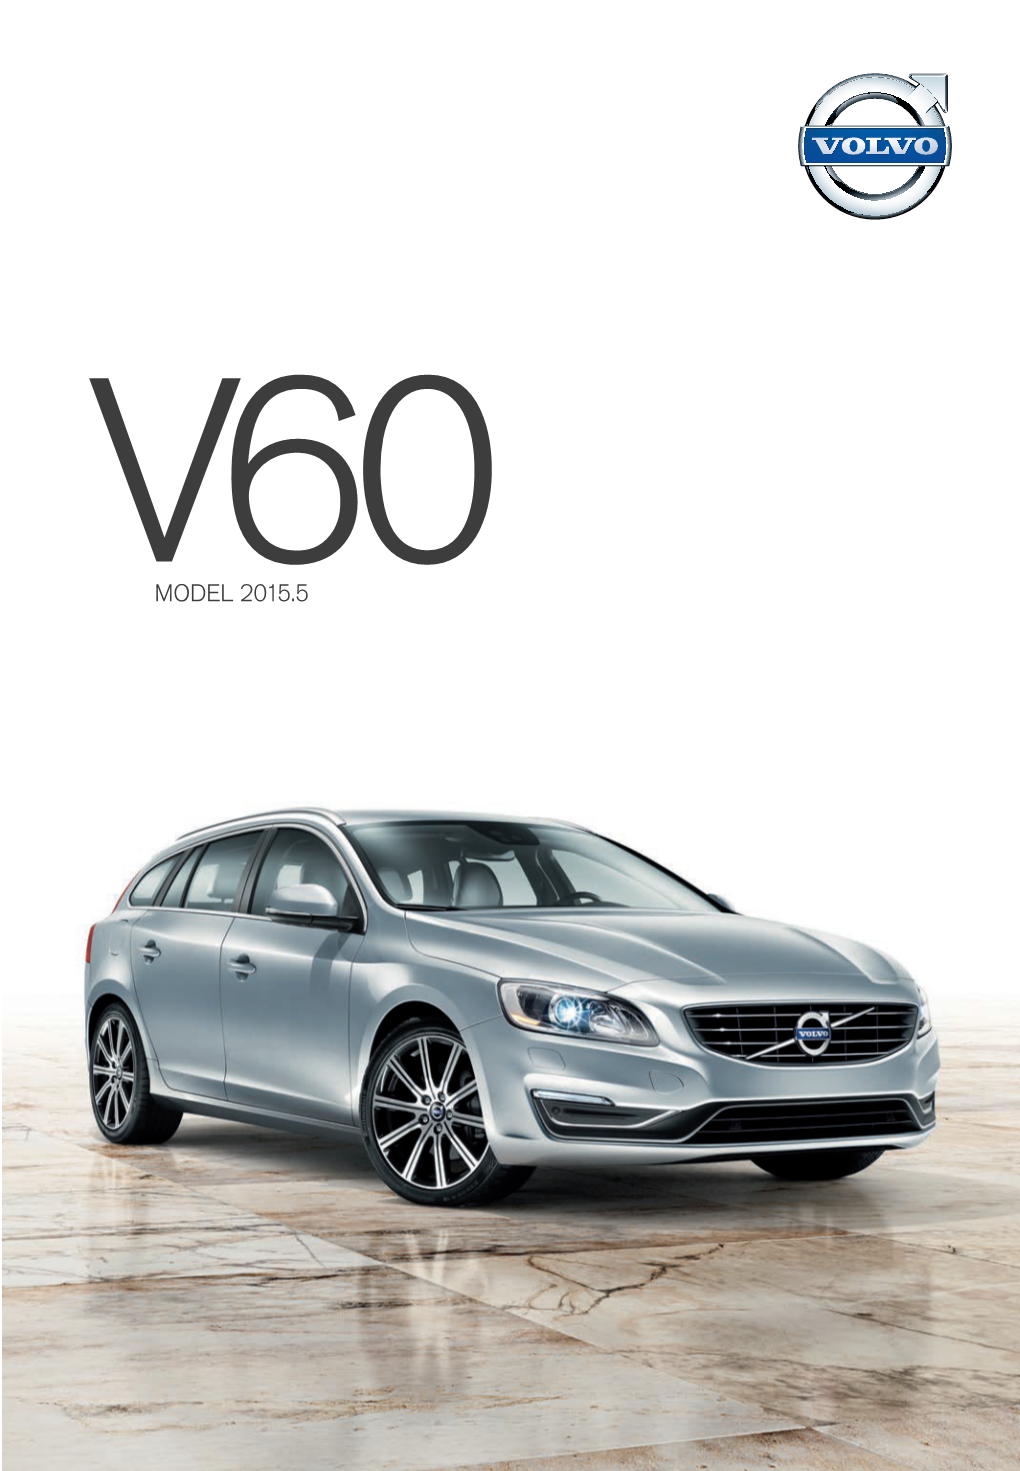 2015 Volvo V60 Brochure